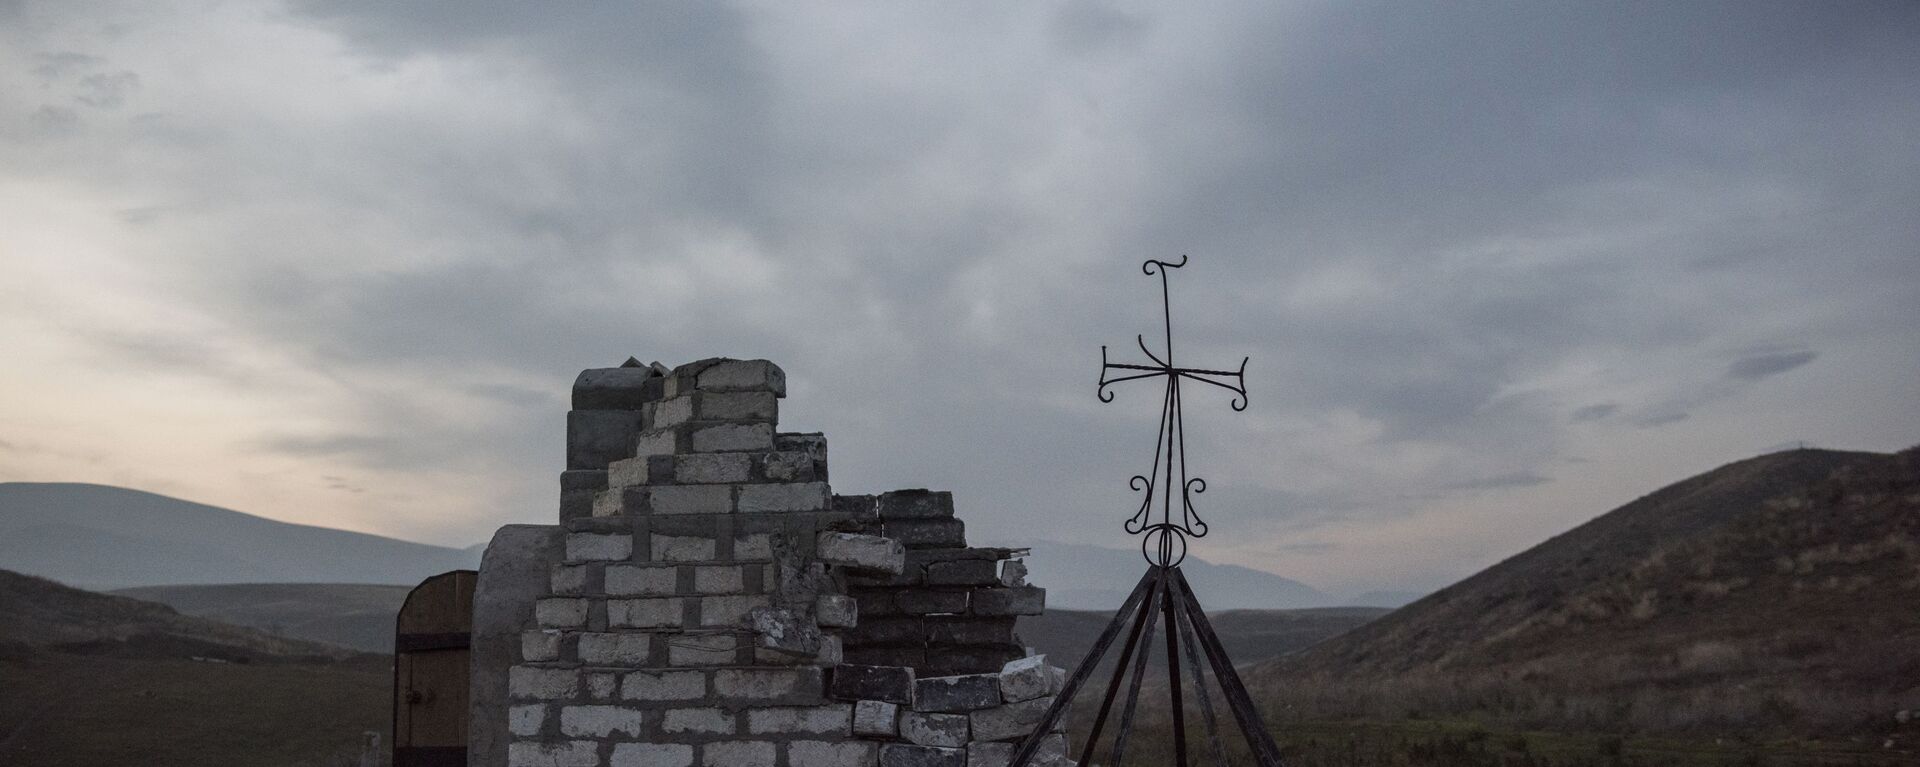 Մարտակերտի` ադրբեջանցիների կողմից ավերված մատուռը - Sputnik Արմենիա, 1920, 22.12.2021